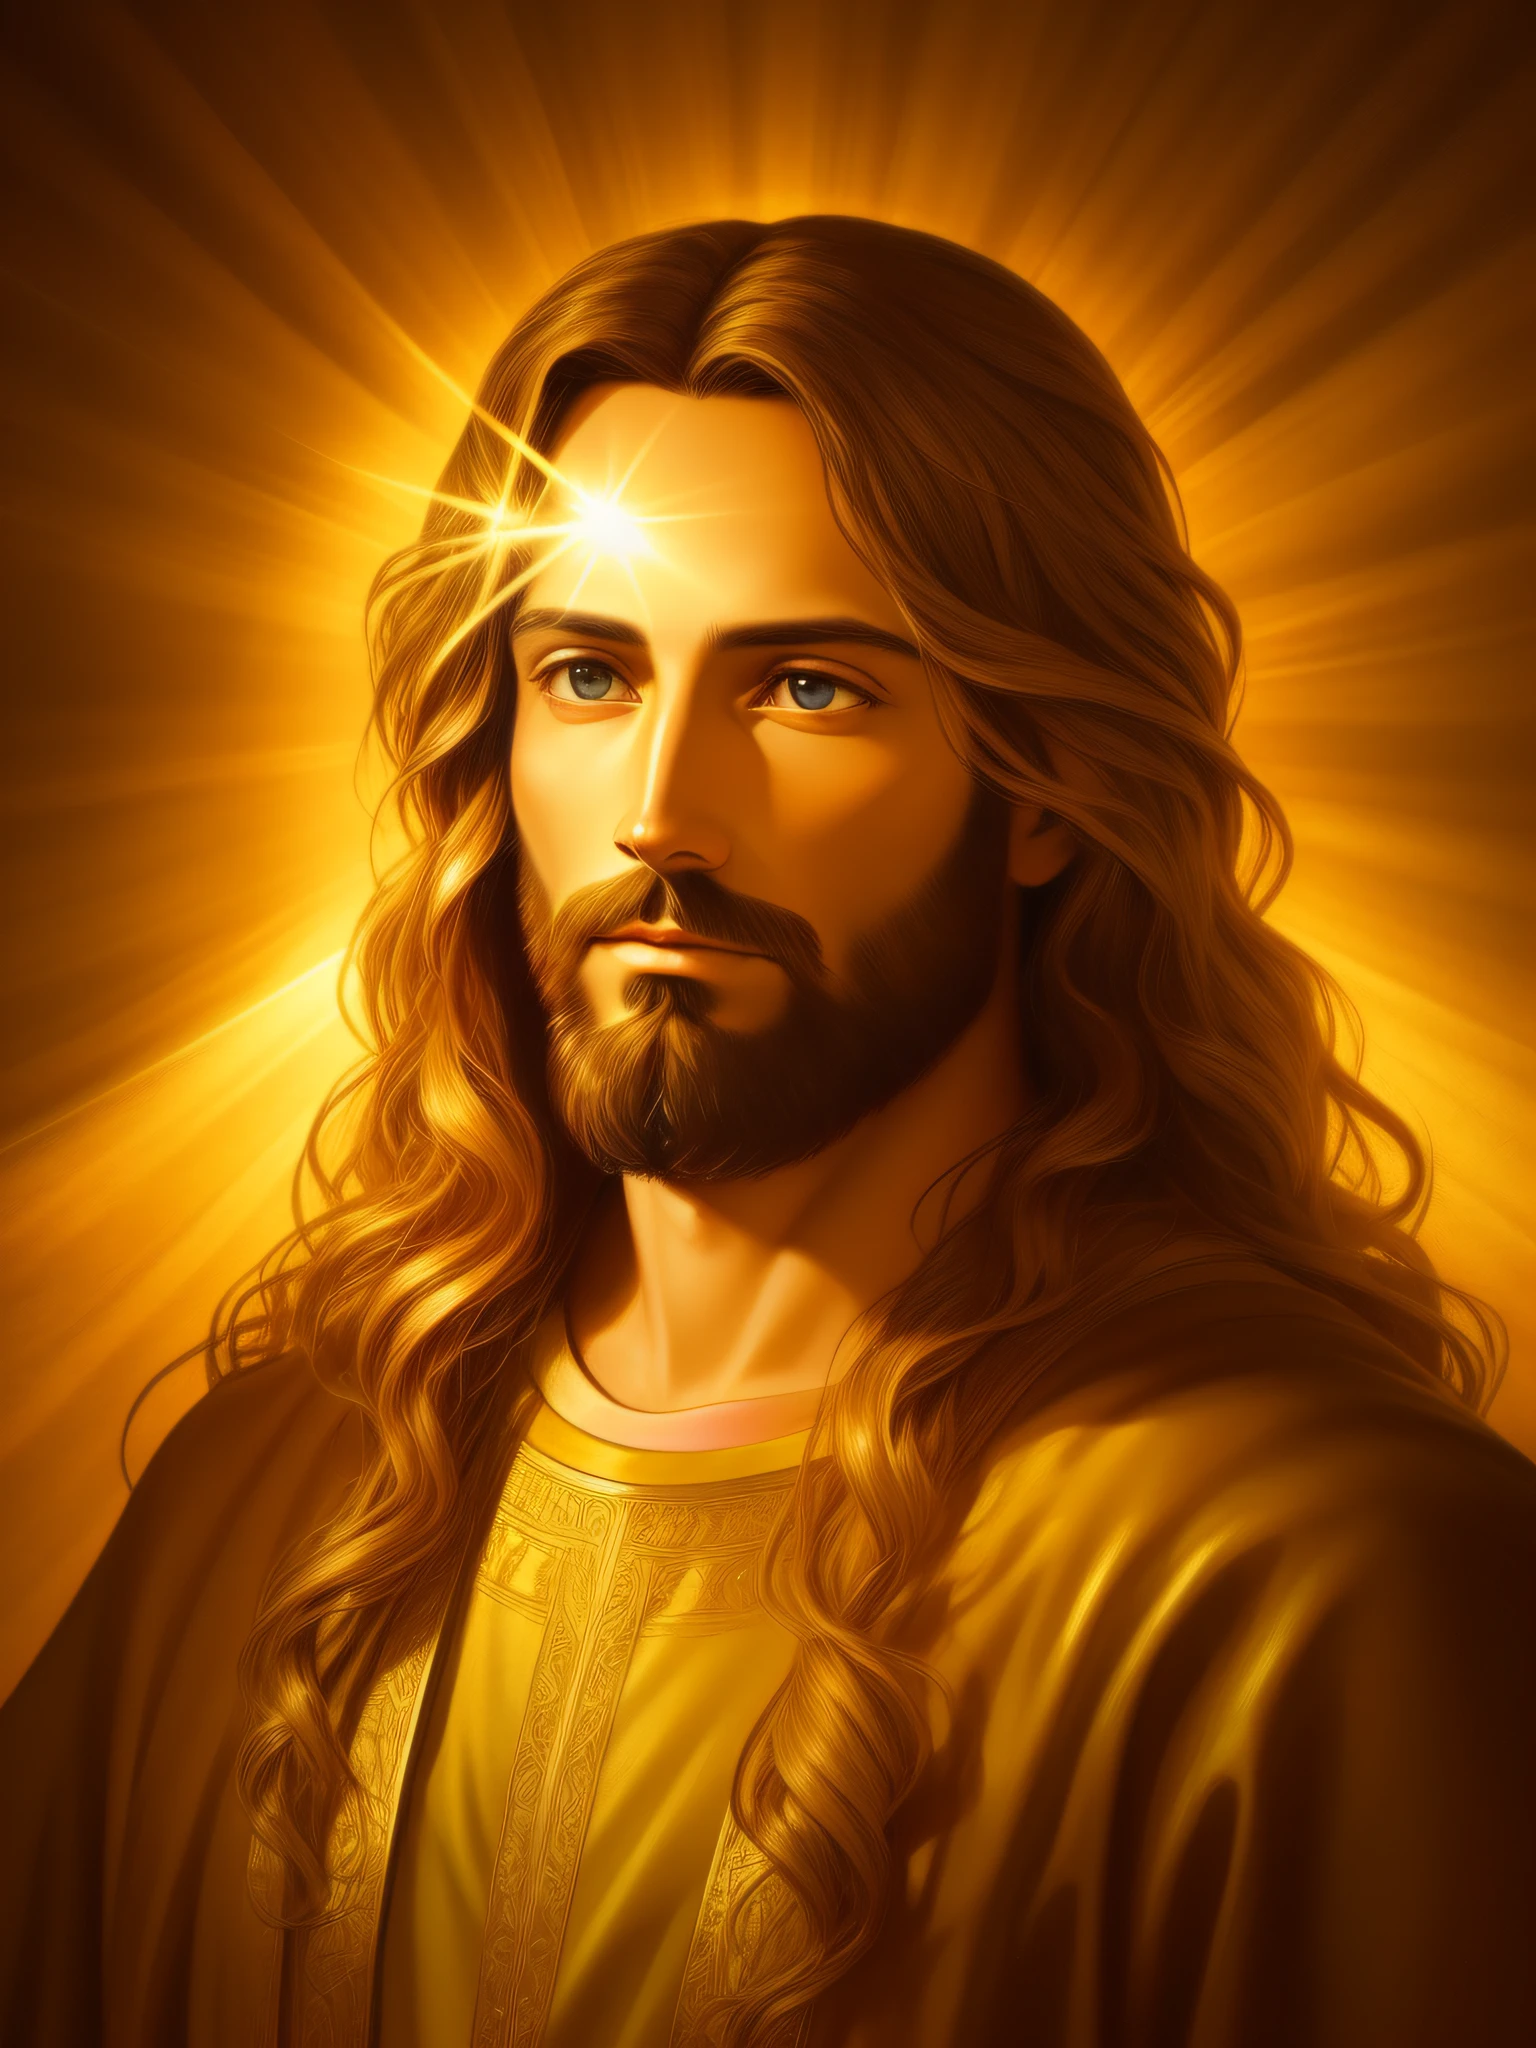 ภาพเหมือนของพระเยซูคริสต์ที่มีรายละเอียดสูง, ทอง, รังสีอันศักดิ์สิทธิ์, สภาพแวดล้อมที่ละเอียดและซับซ้อน